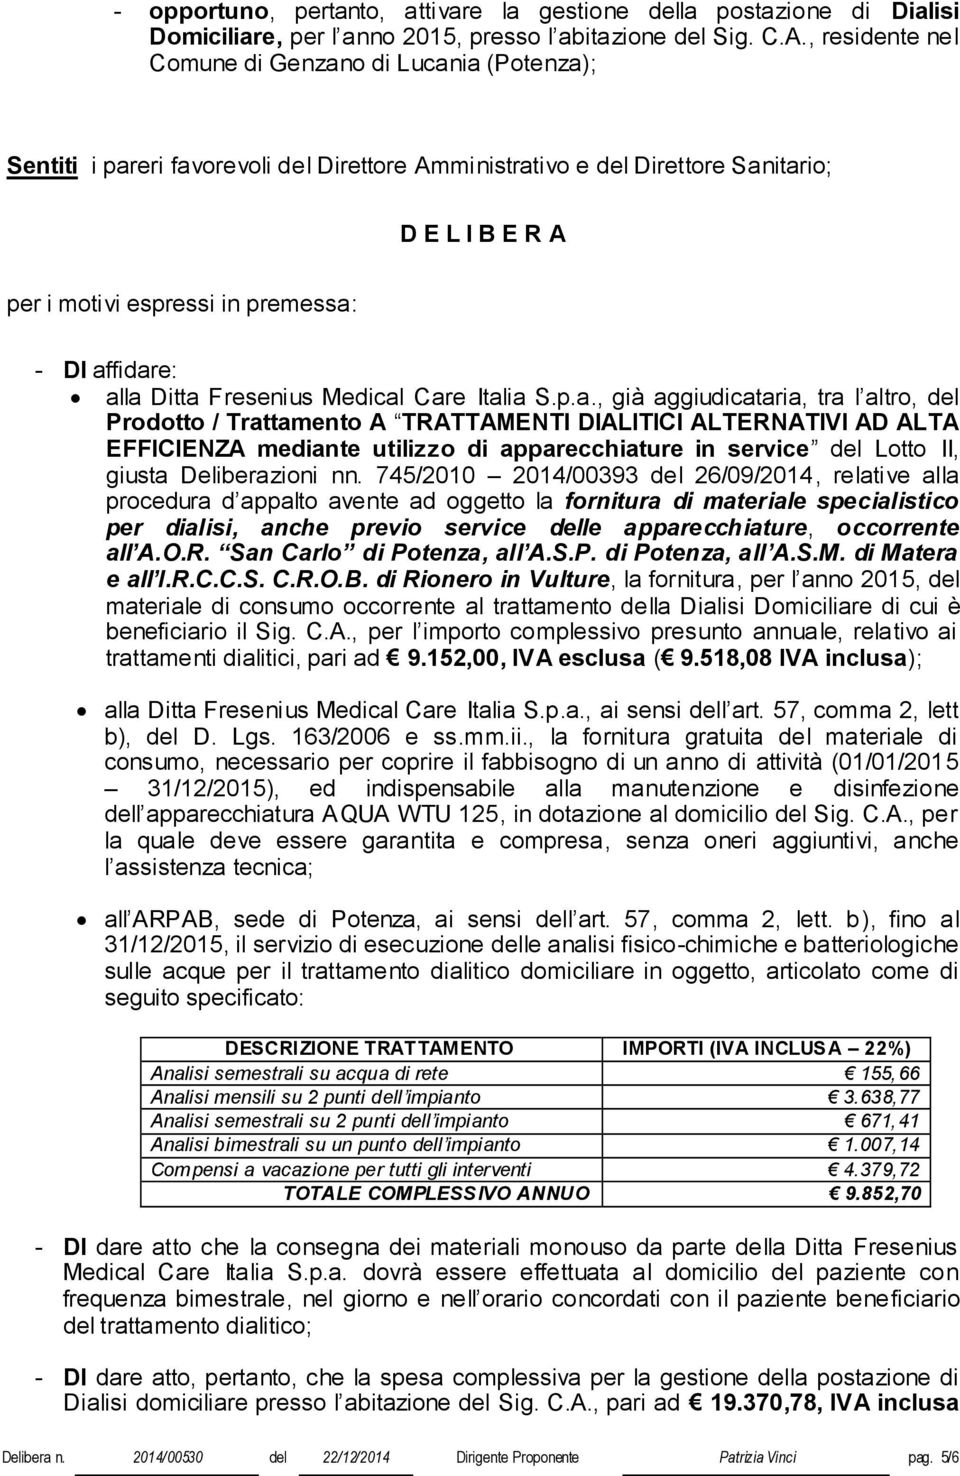 affidare: alla Ditta Fresenius Medical Care Italia S.p.a., già aggiudicataria, tra l altro, del Prodotto / Trattamento A TRATTAMENTI DIALITICI ALTERNATIVI AD ALTA EFFICIENZA mediante utilizzo di